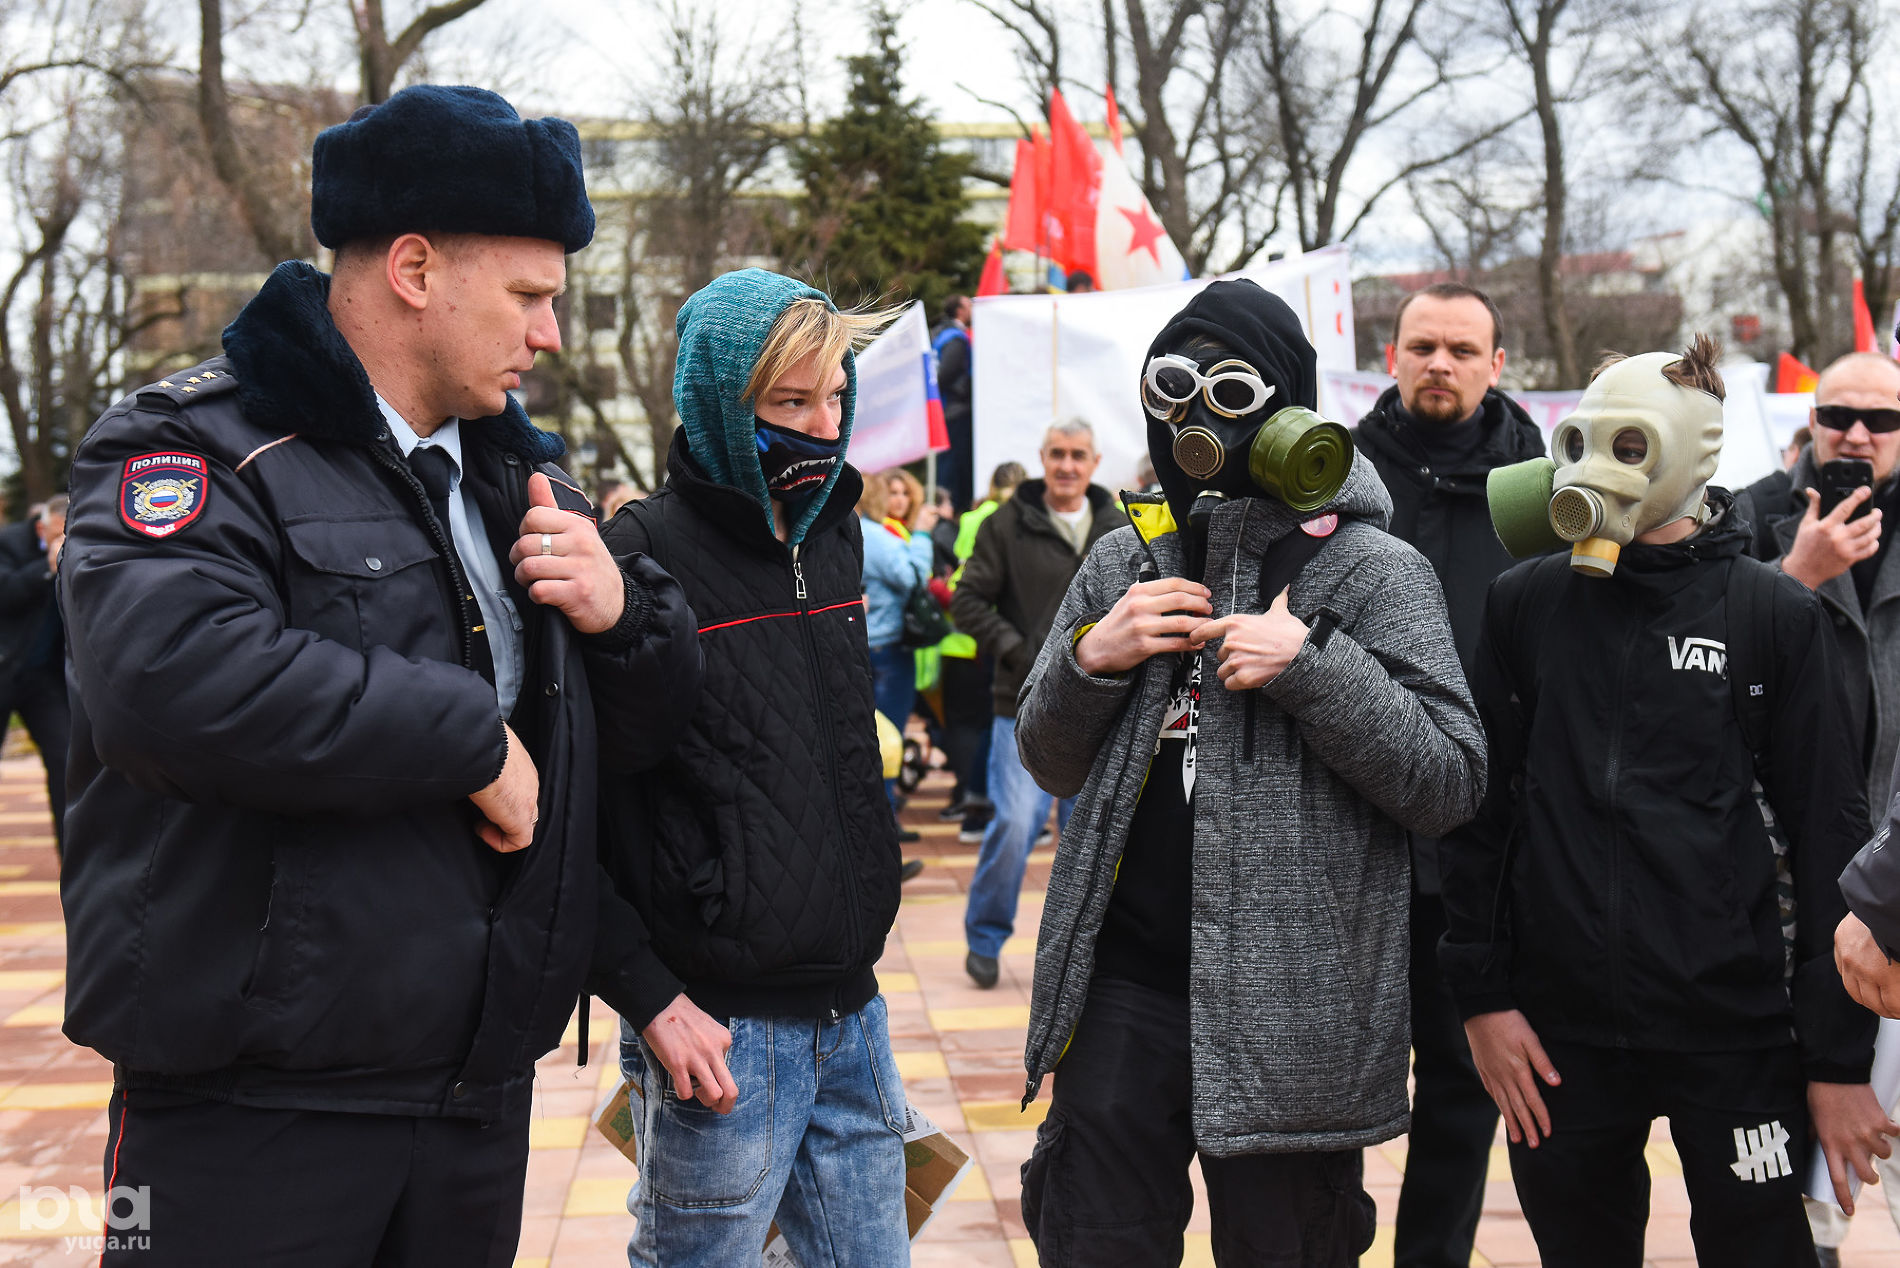 Митинг протеста в Вишняковском сквере Краснодара © Фото Елены Синеок, Юга.ру